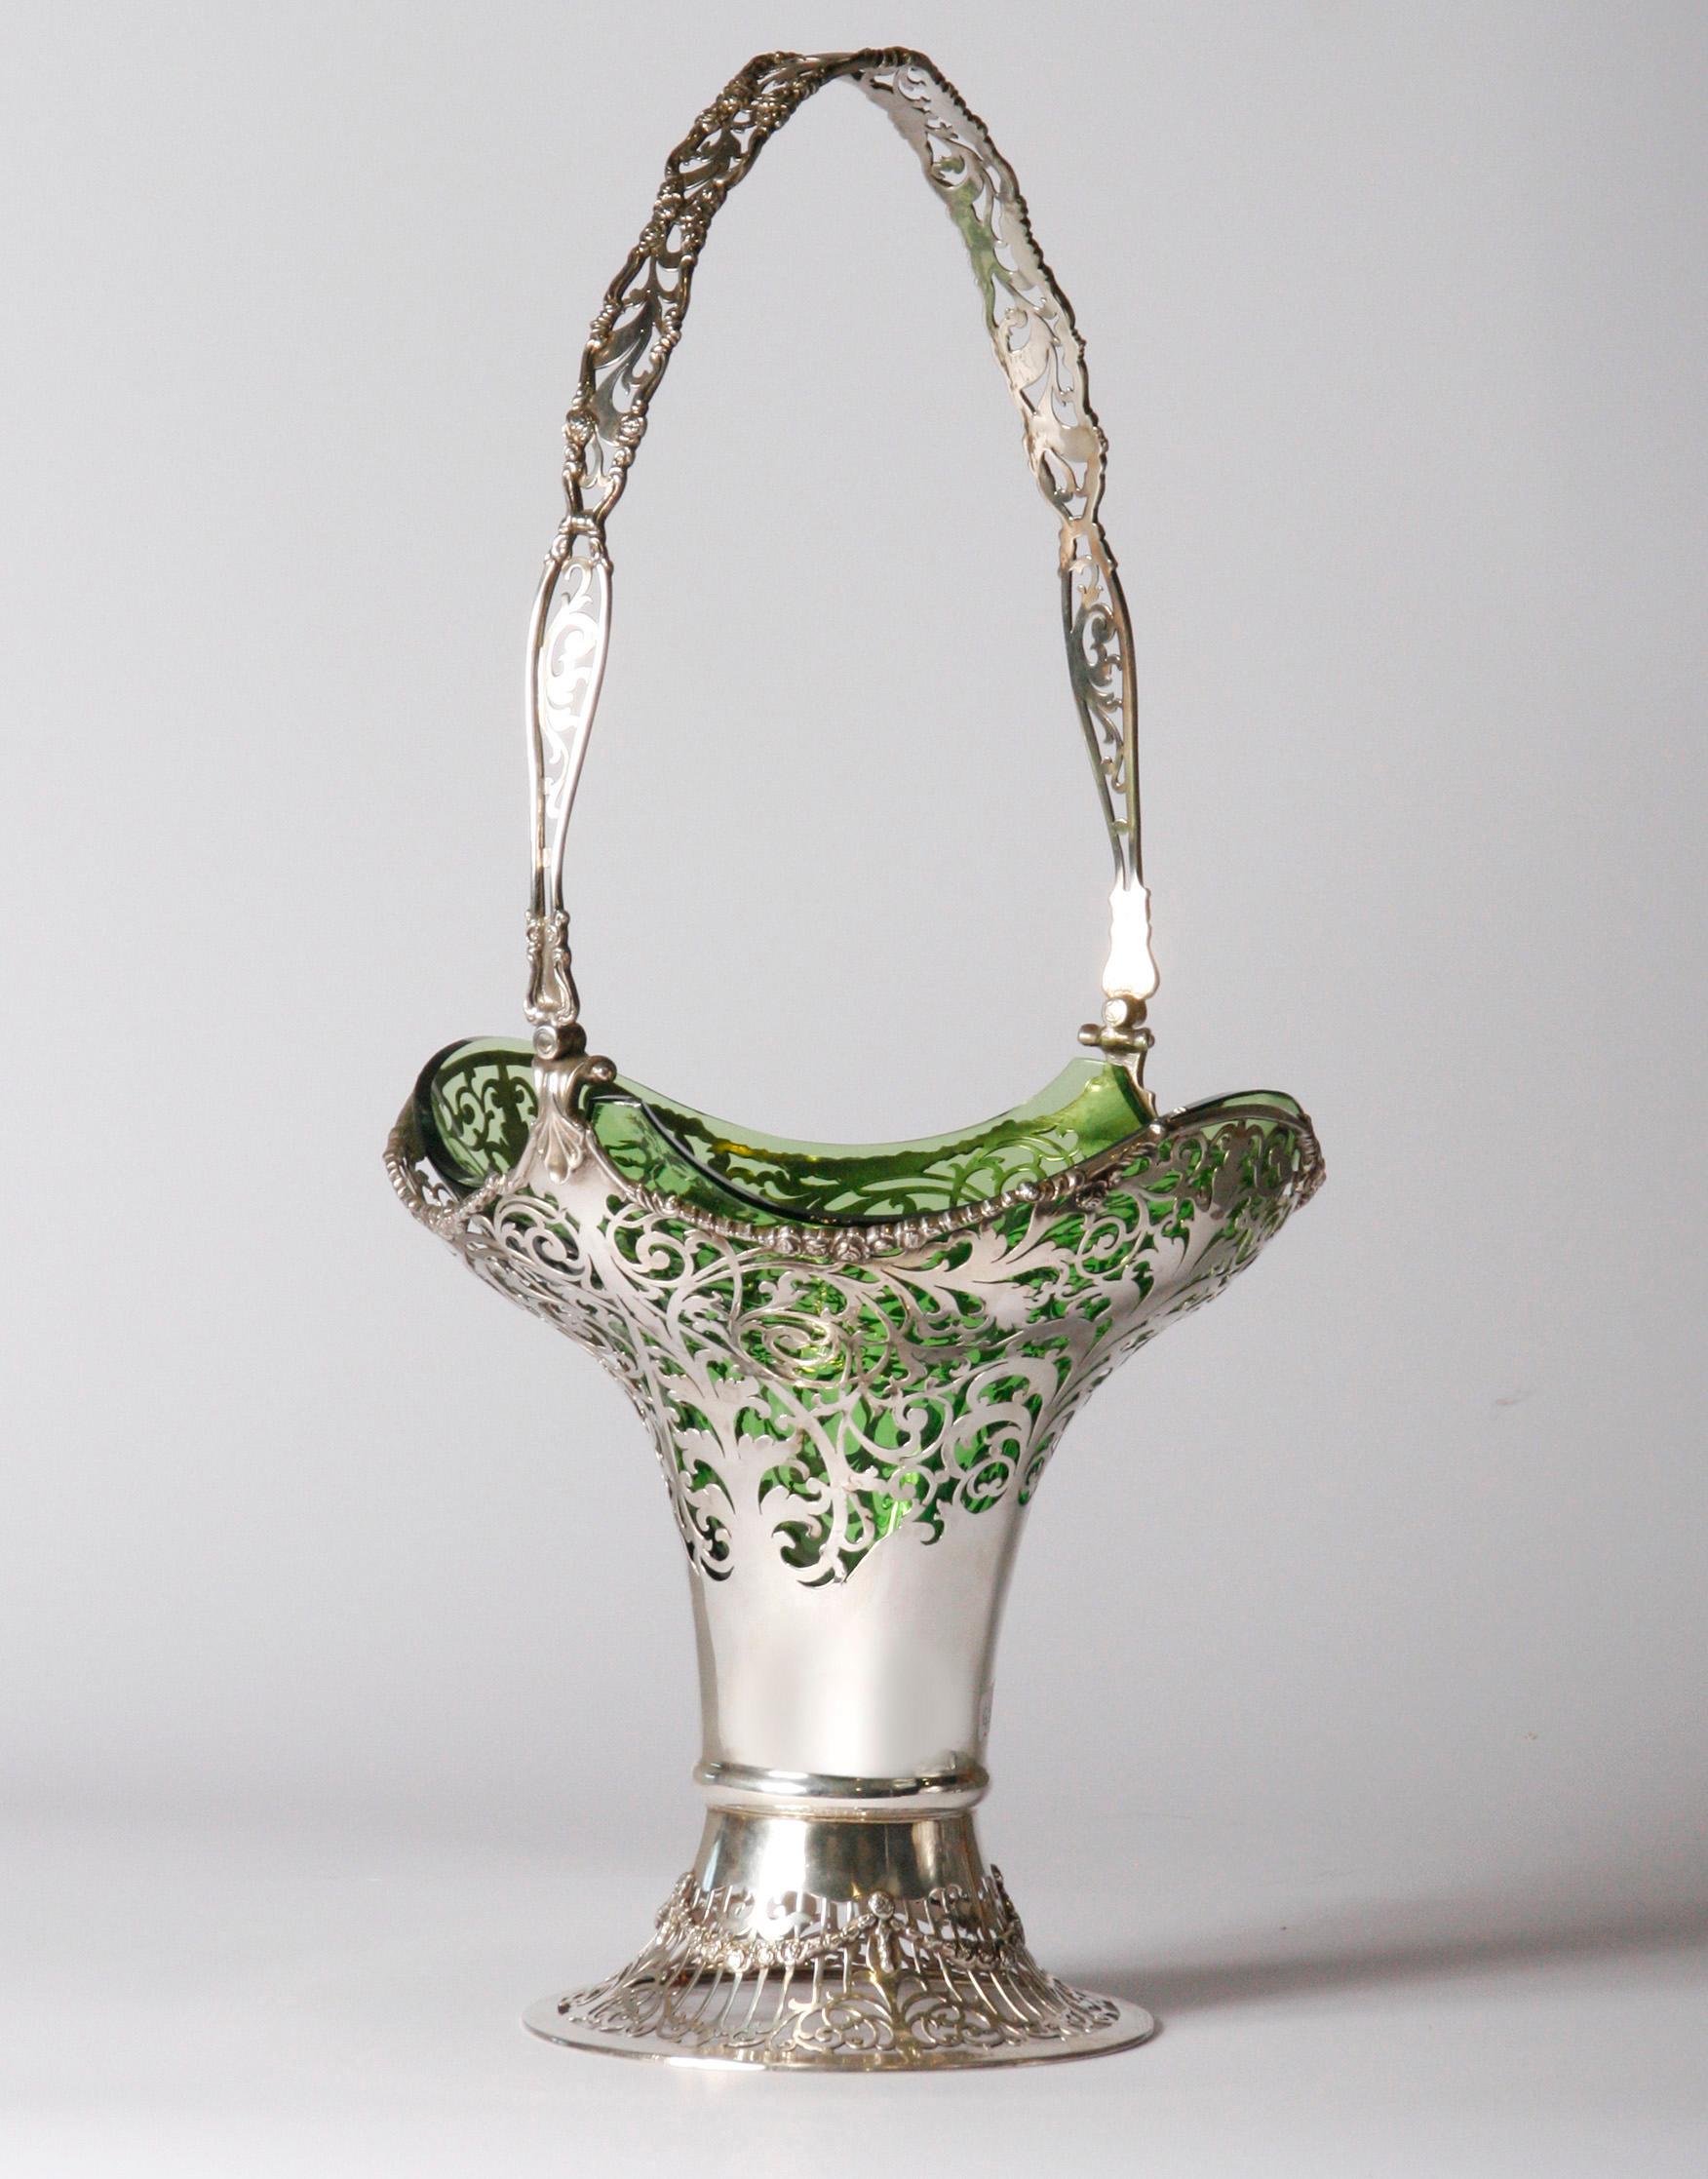 Schöner und großer silberner Blumenkorb.
Die Vase wurde von Mappin & Webb London hergestellt. Das Silber ist reichhaltig bearbeitet und ajour gesägt. Das Glasinnere ist original und aus grünem, handgefertigtem Glas hergestellt. Diese ist noch